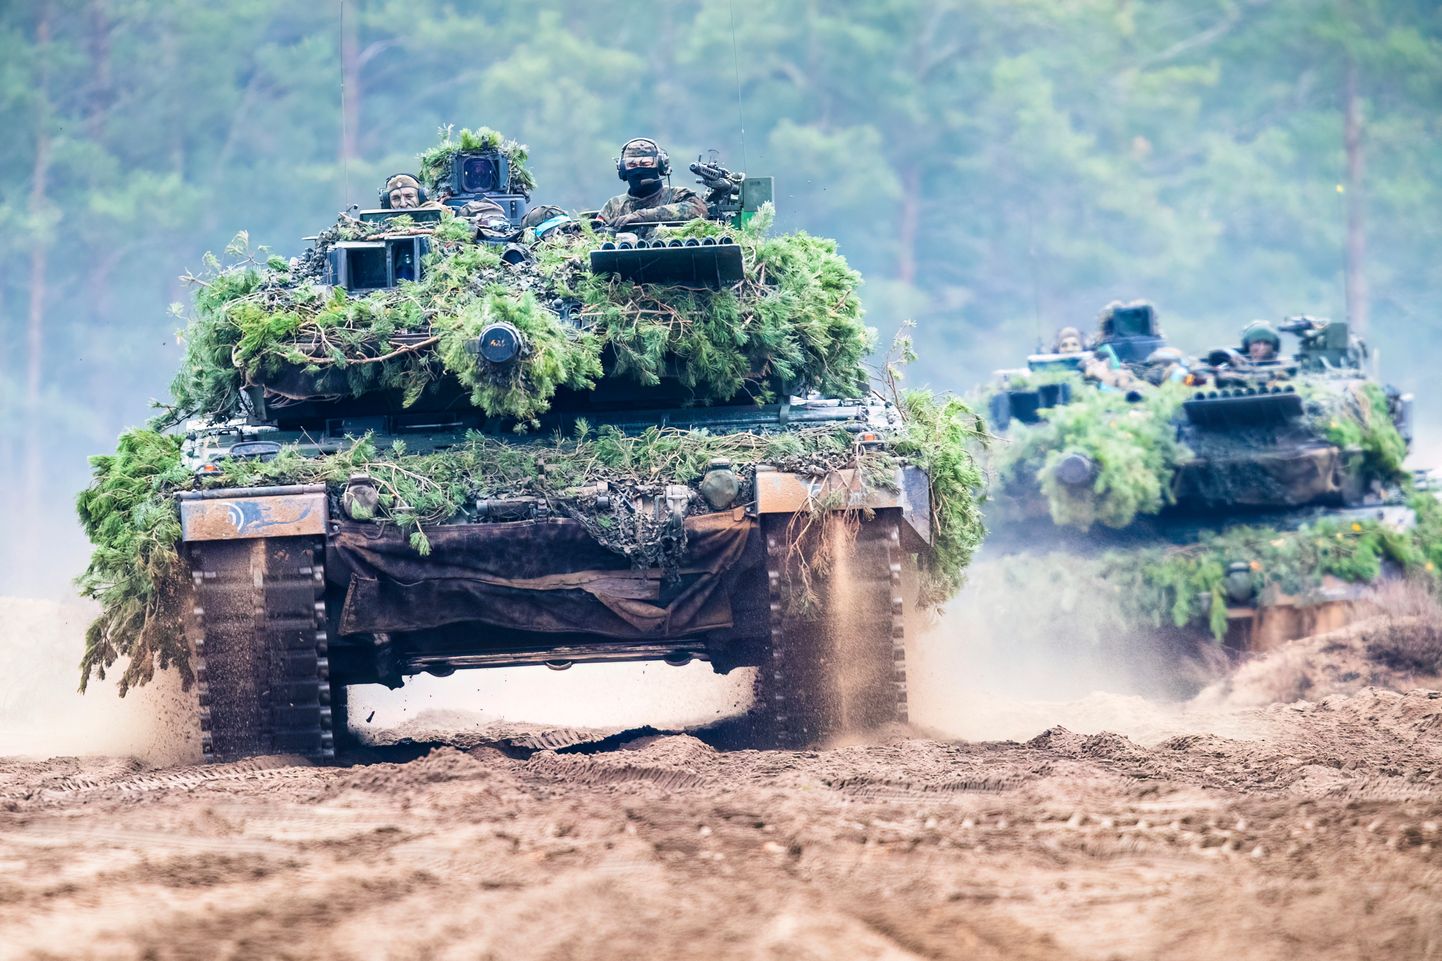 "Leopard 2" tanks.